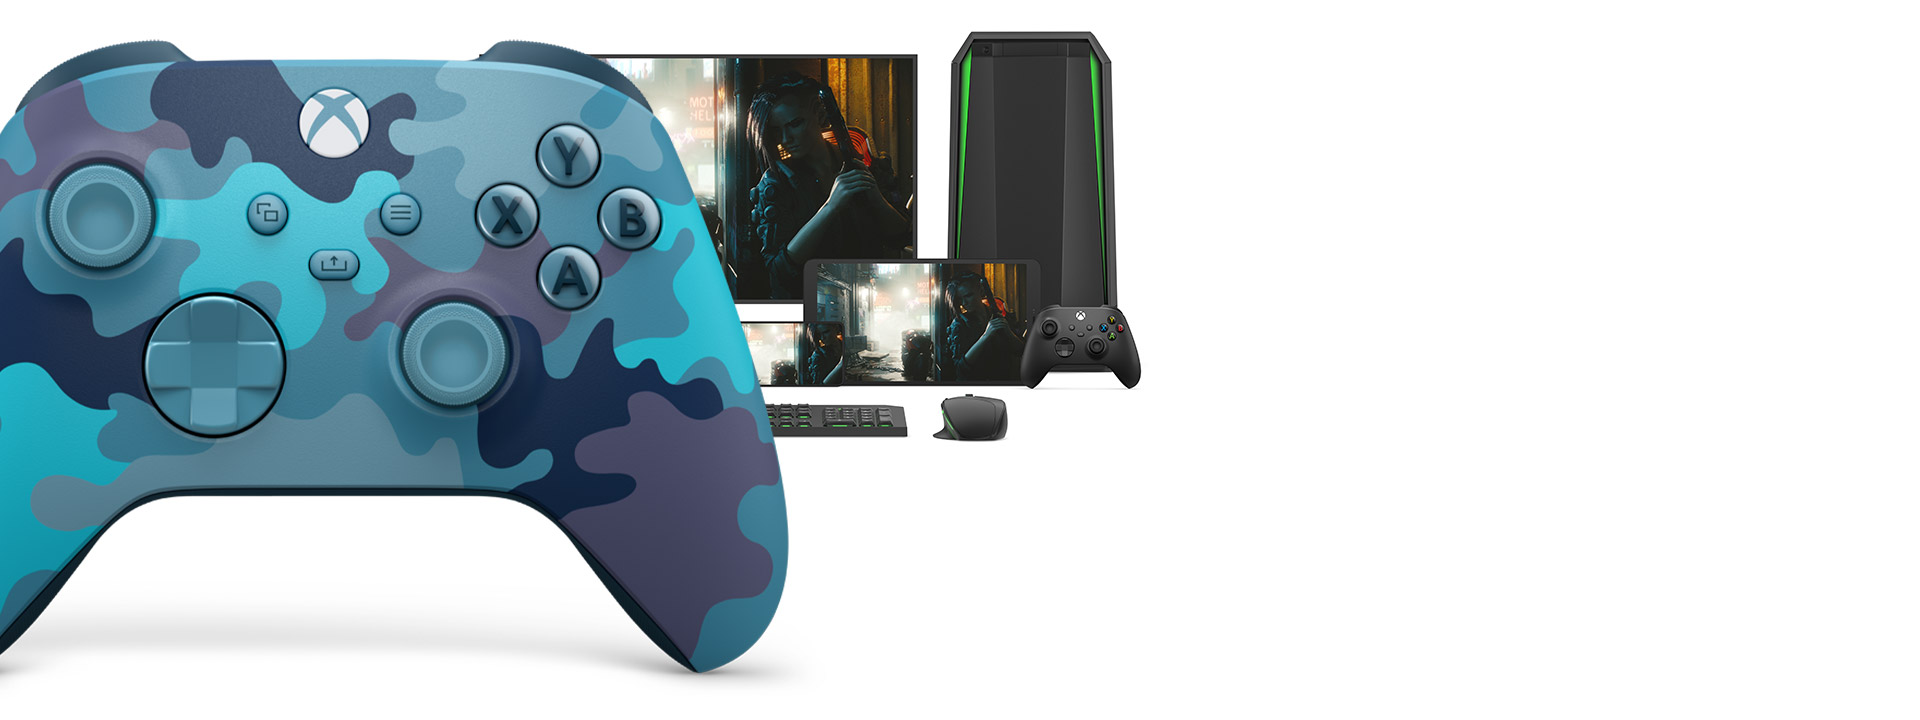 Xbox draadloze controller mineral camo met een computer, tv en Xbox Series S